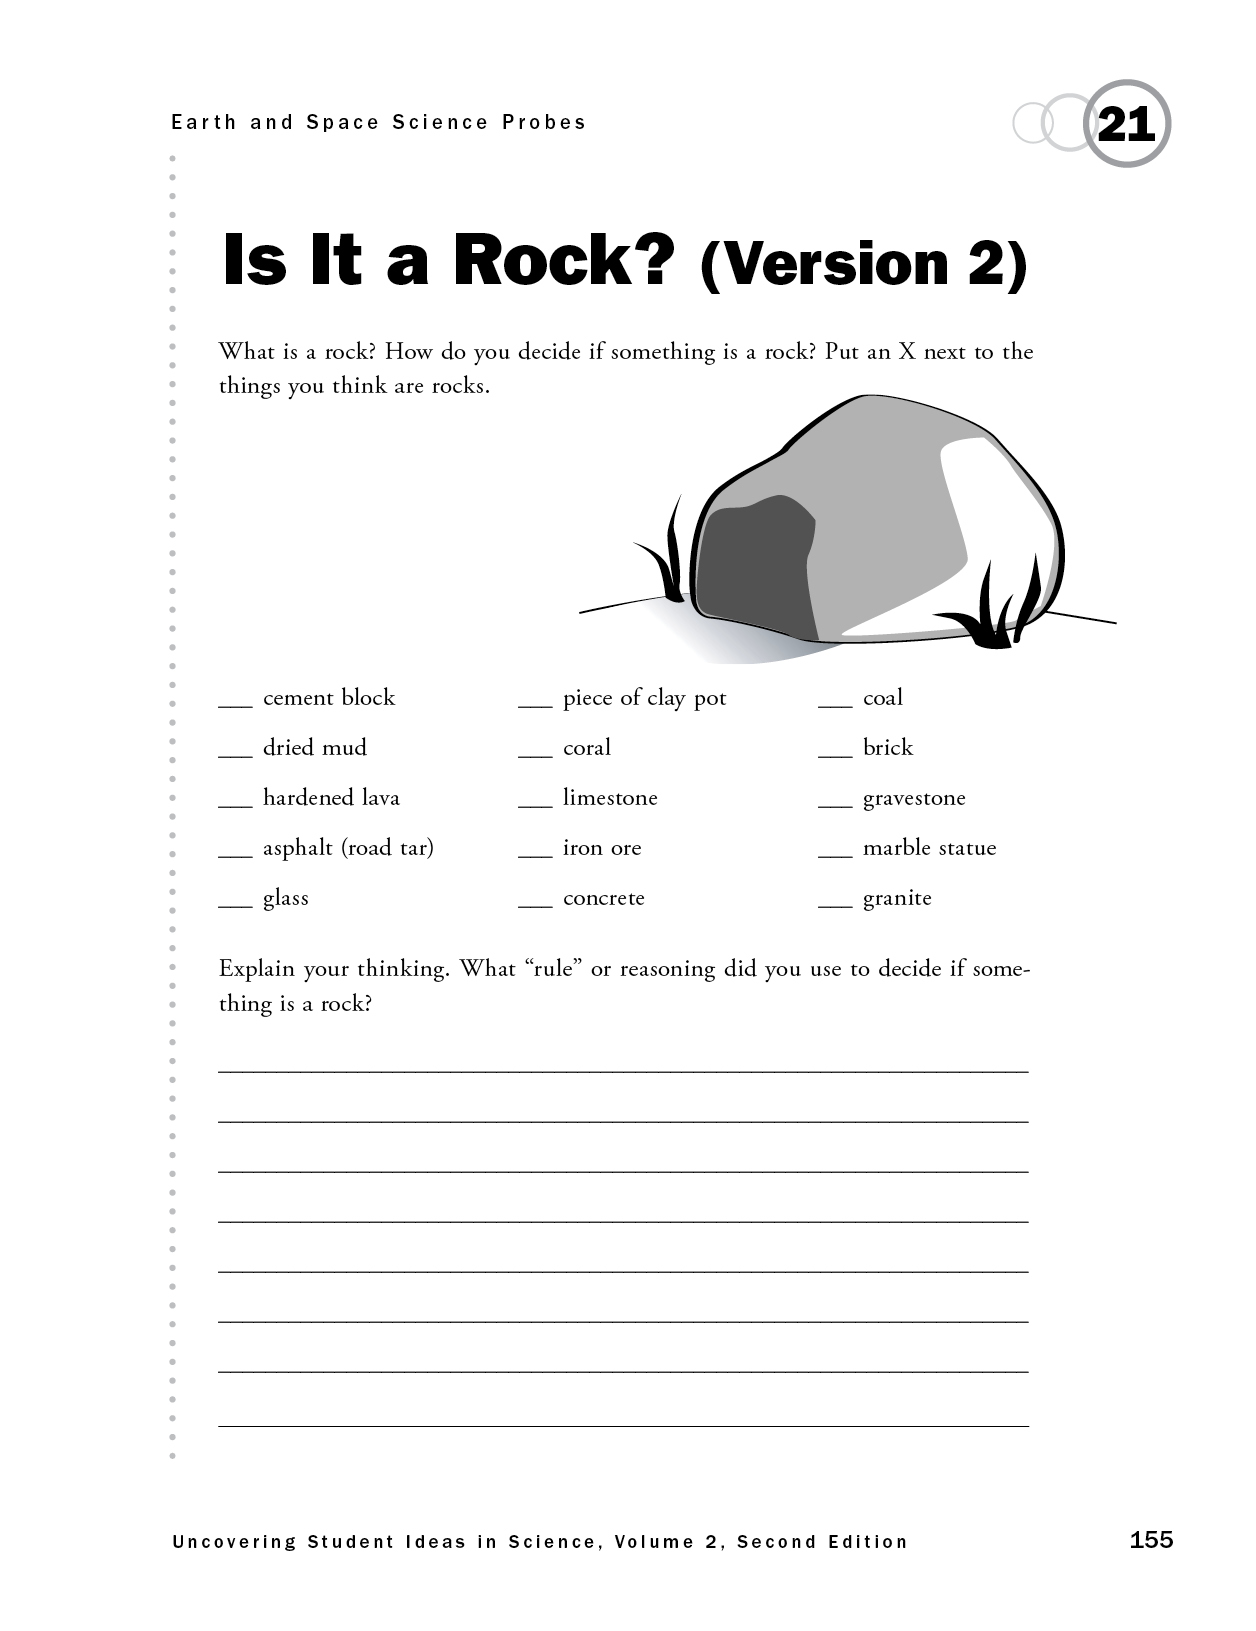 Is It a Rock? (Version 2)